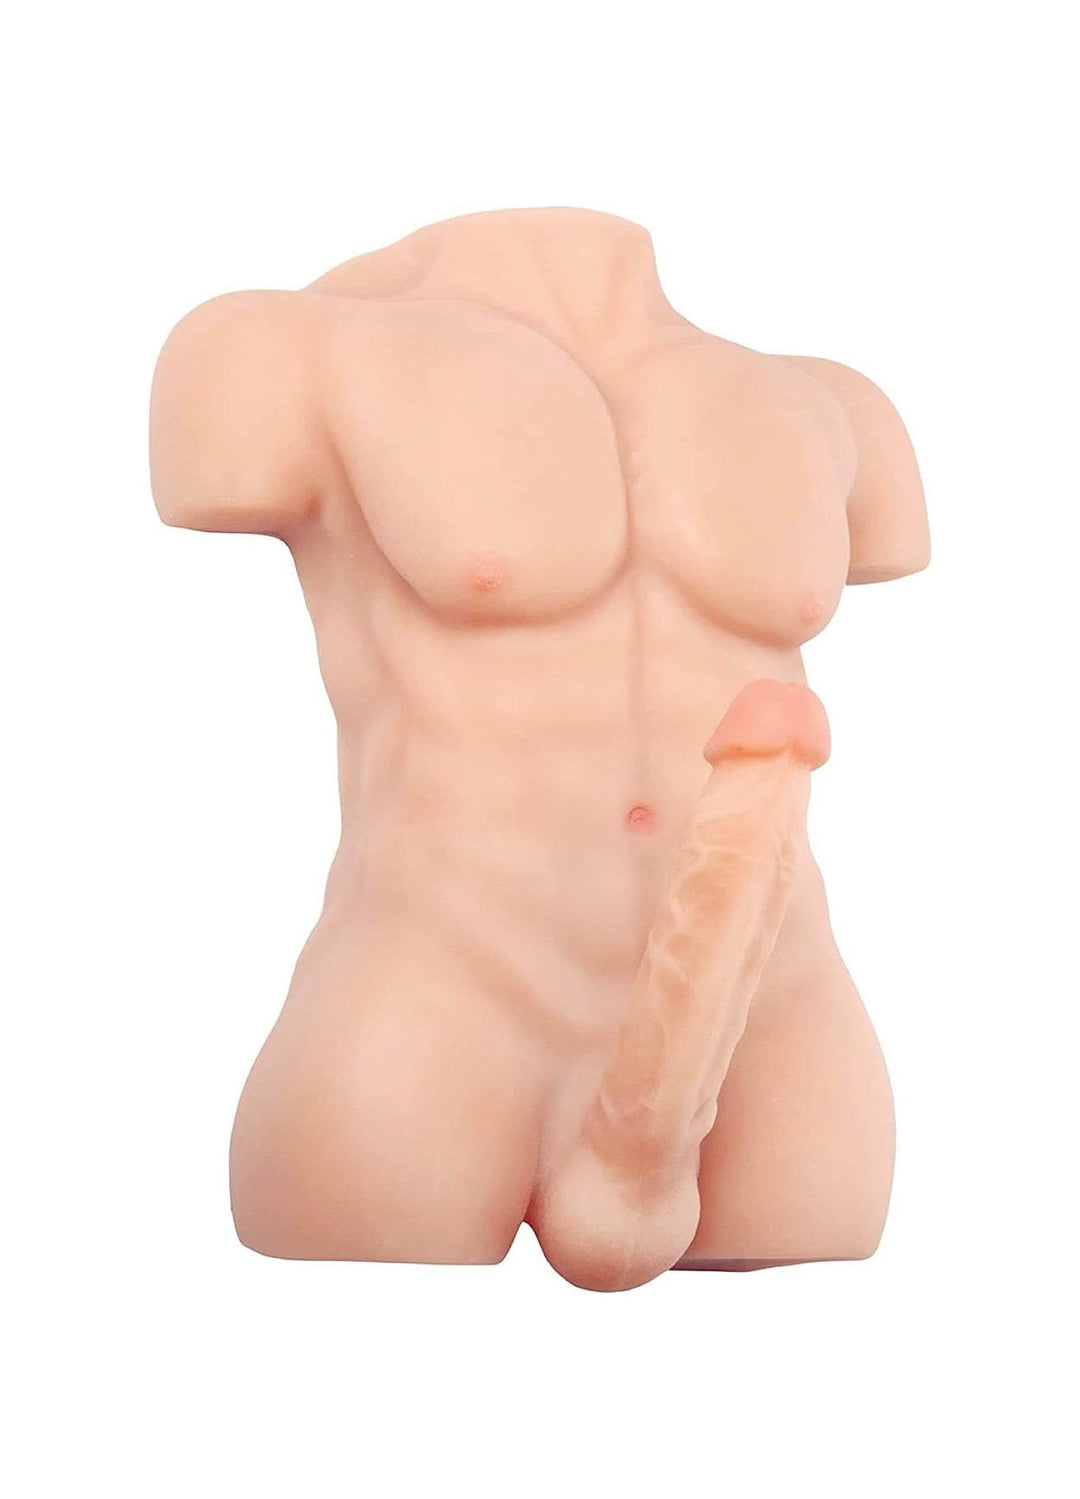 Muñeca sexual masculina de medio cuerpo de 15,4 libras con ano